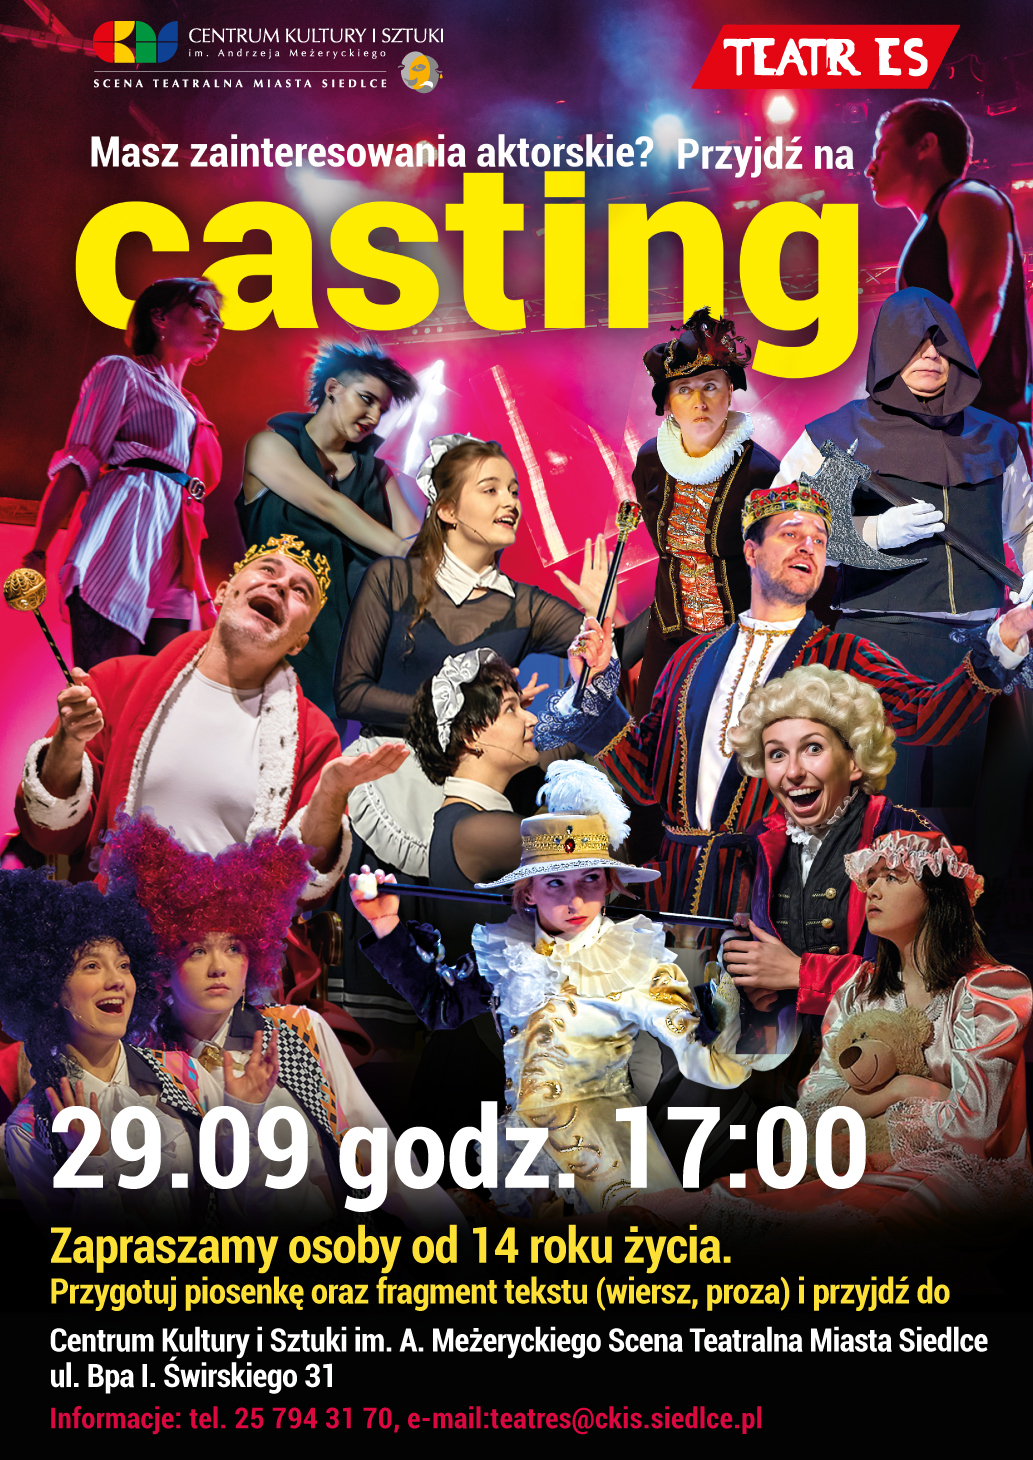 Teatr ES zaprasza na CASTING. Przesłuchania odbędą się 29 września o godz. 17:00 na Scenie Teatralnej Miasta Siedlce.